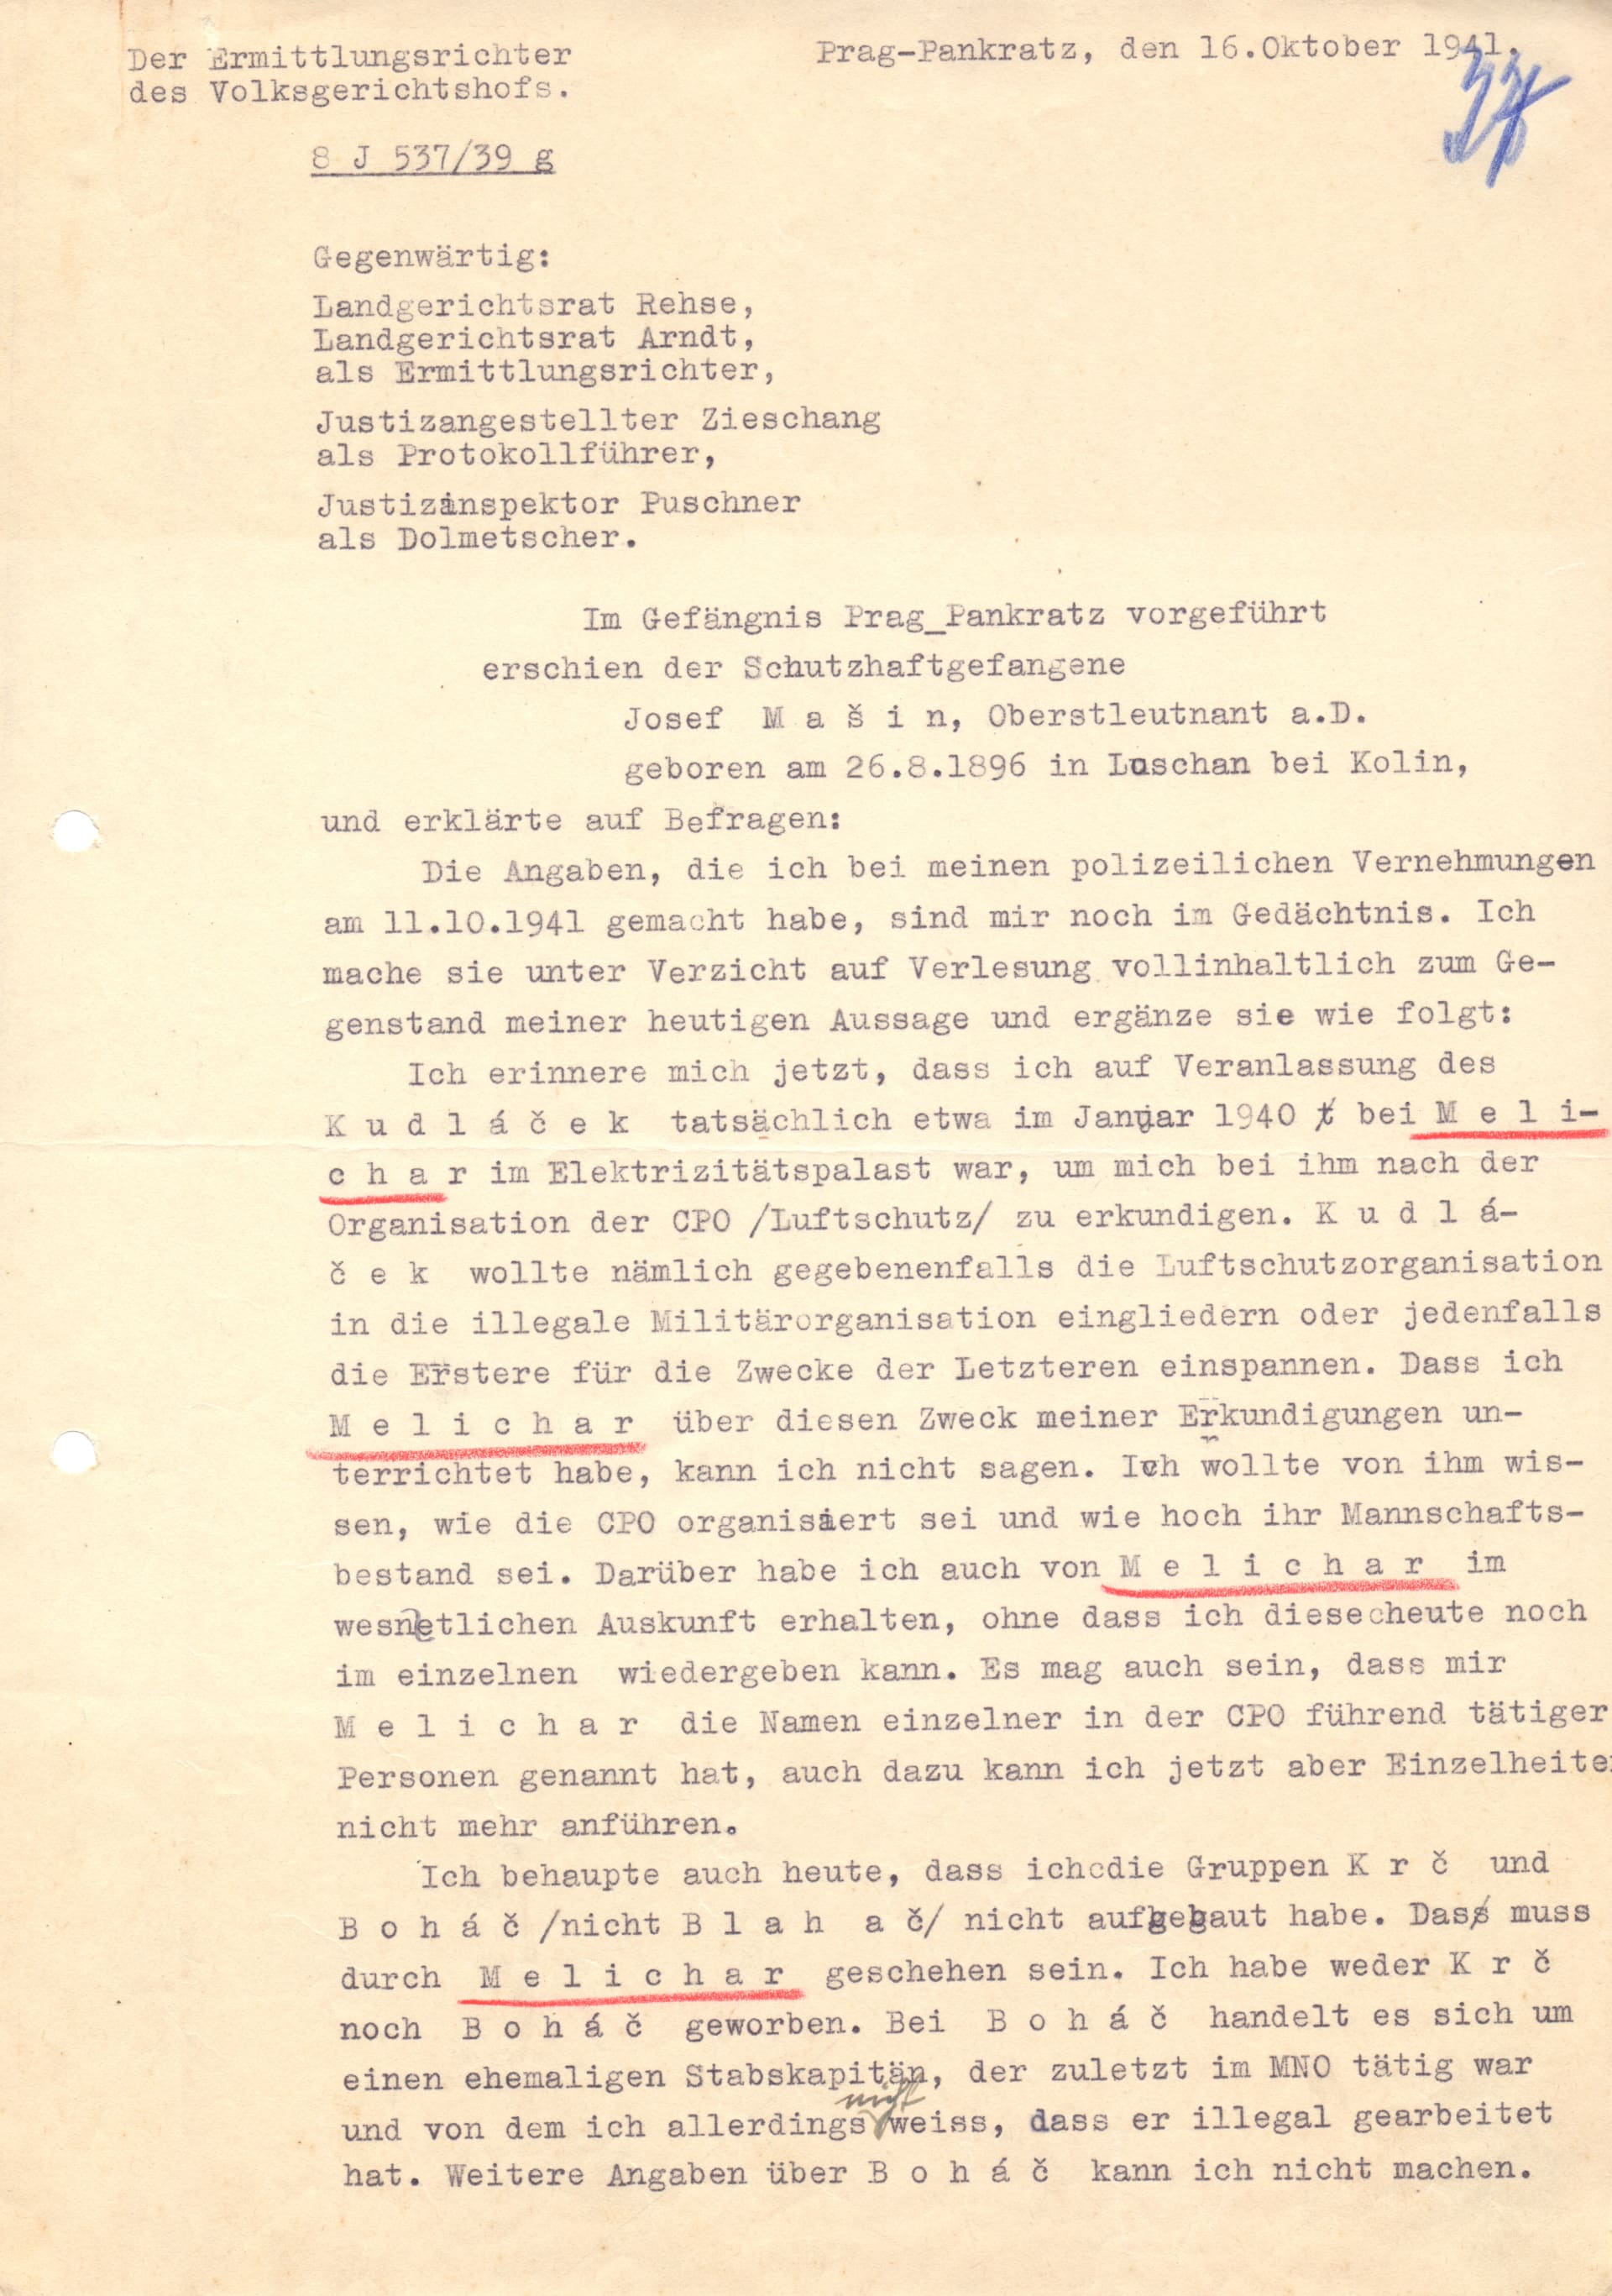 Výslechový protokol Josefa Mašína  z 16. 10. 1941 na pražském gestapu, který objevil historik Uhlíř. Mašín vypovídal o konkrétních odbojářích. 